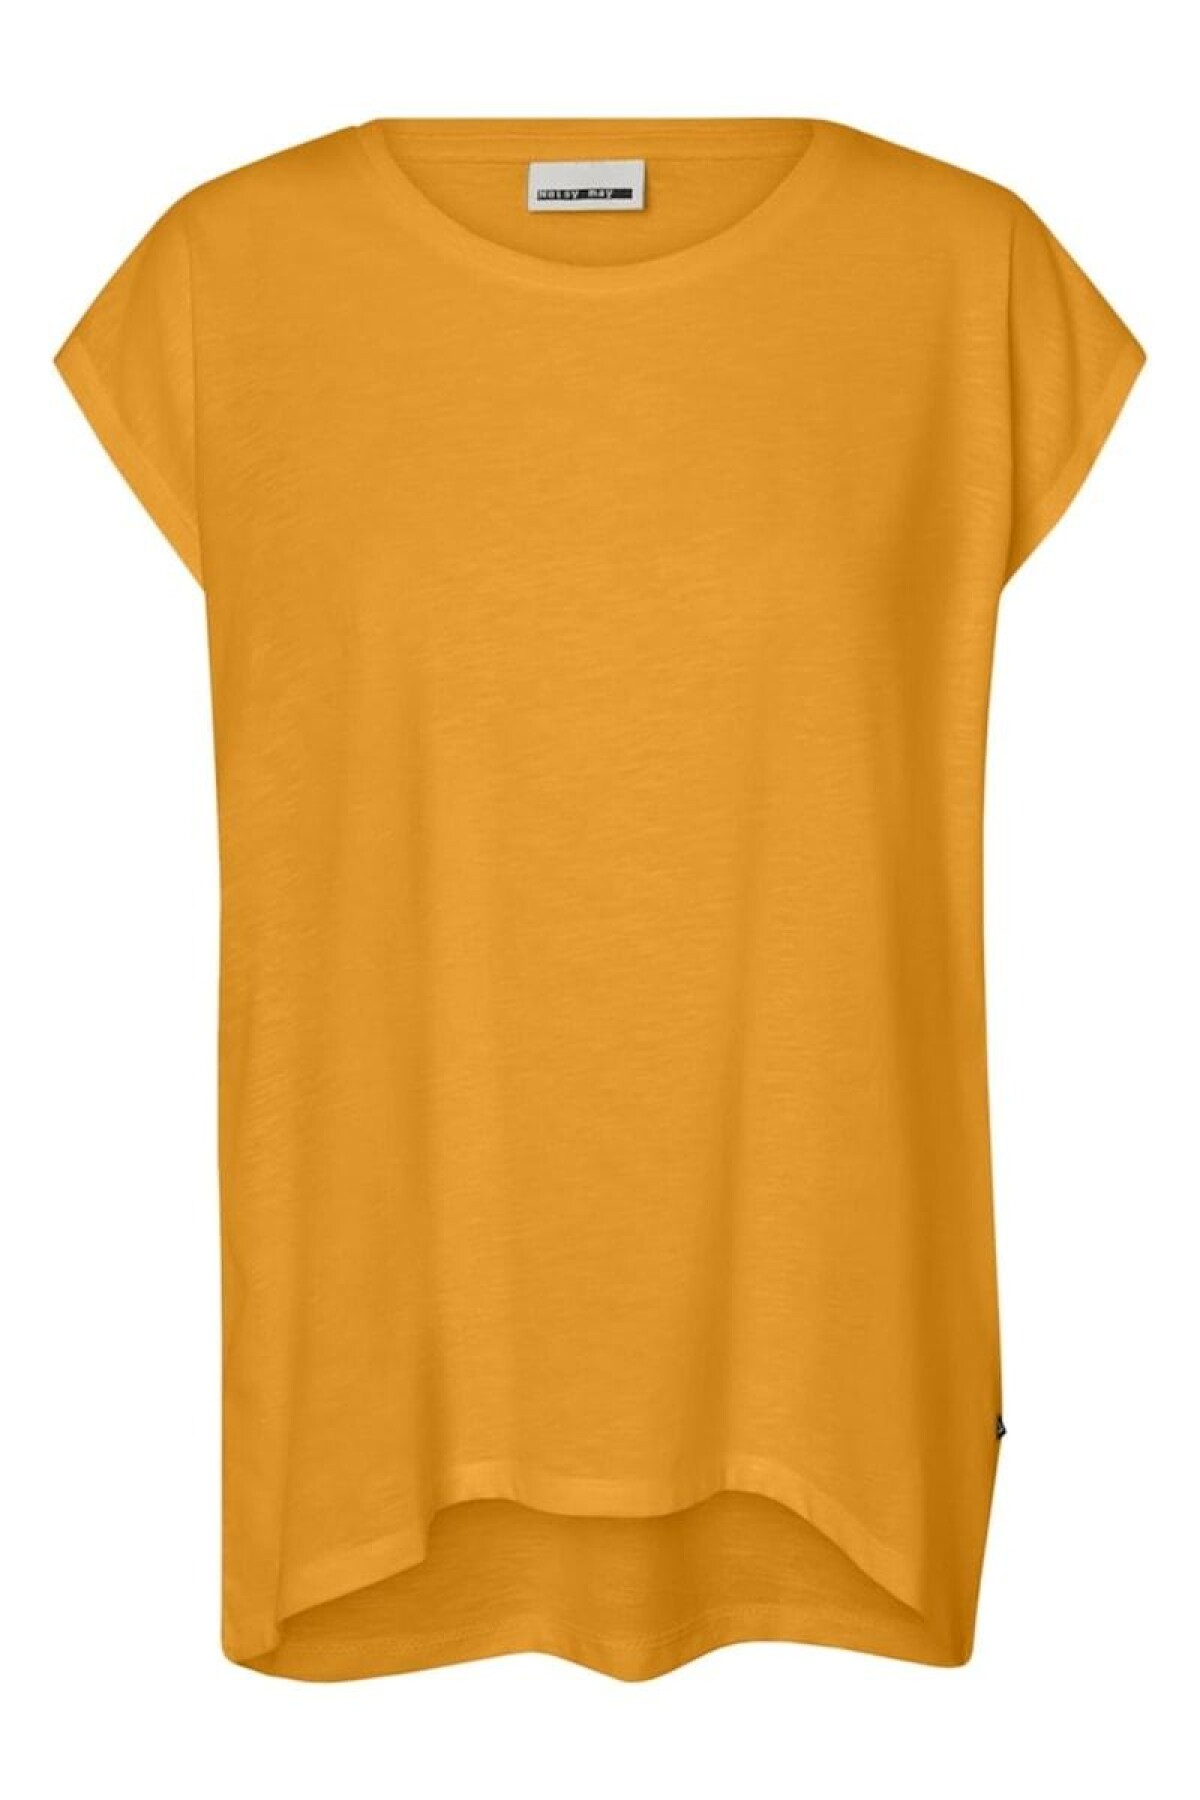 Camiseta Mathilde Radiant Yellow